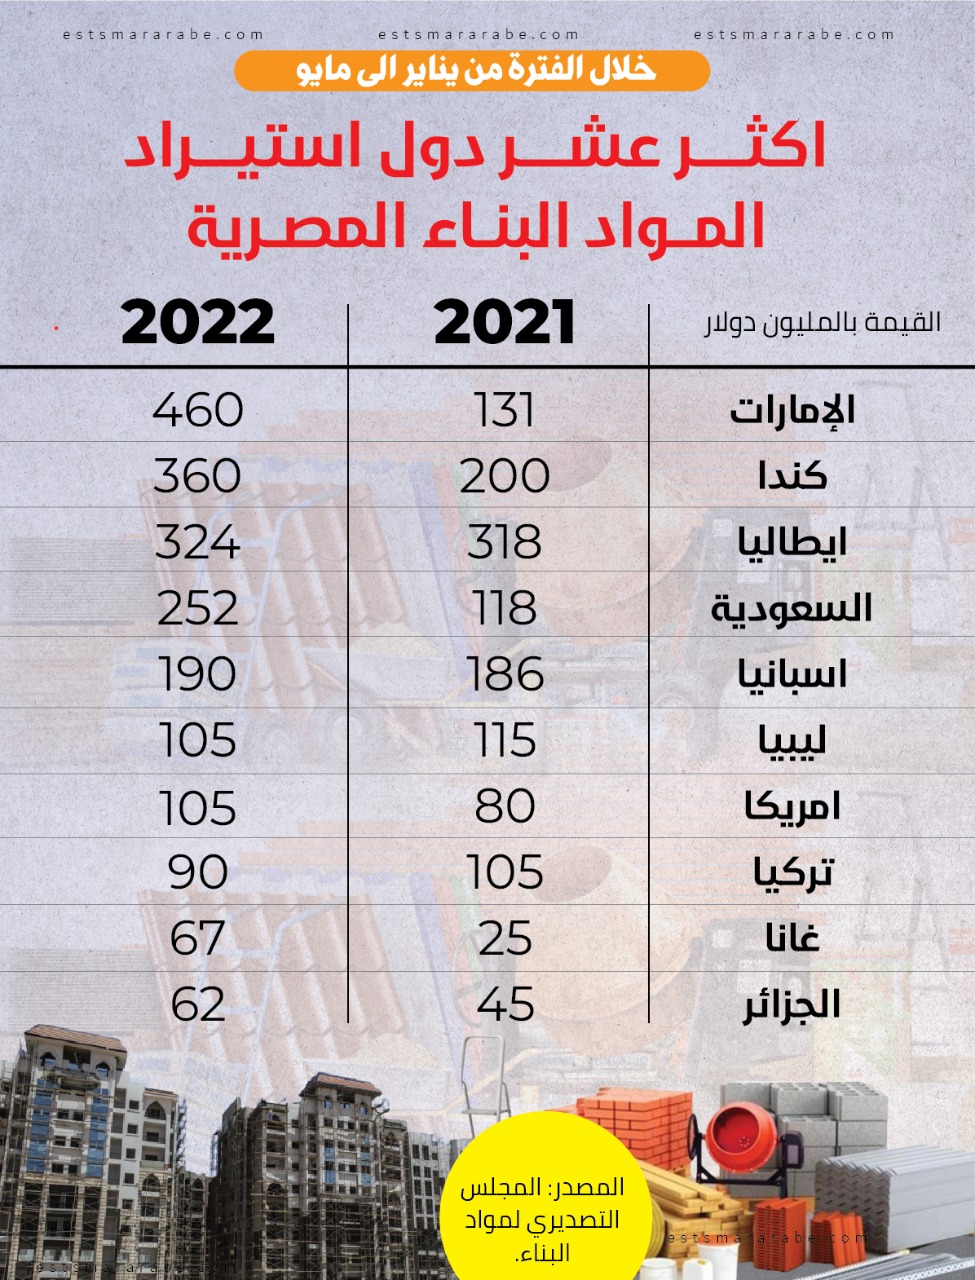 إنفوجرافيك|| اكثر عشر دول استيراد مواد البناء المصرية خلال الفترو من يناير إلي مايو